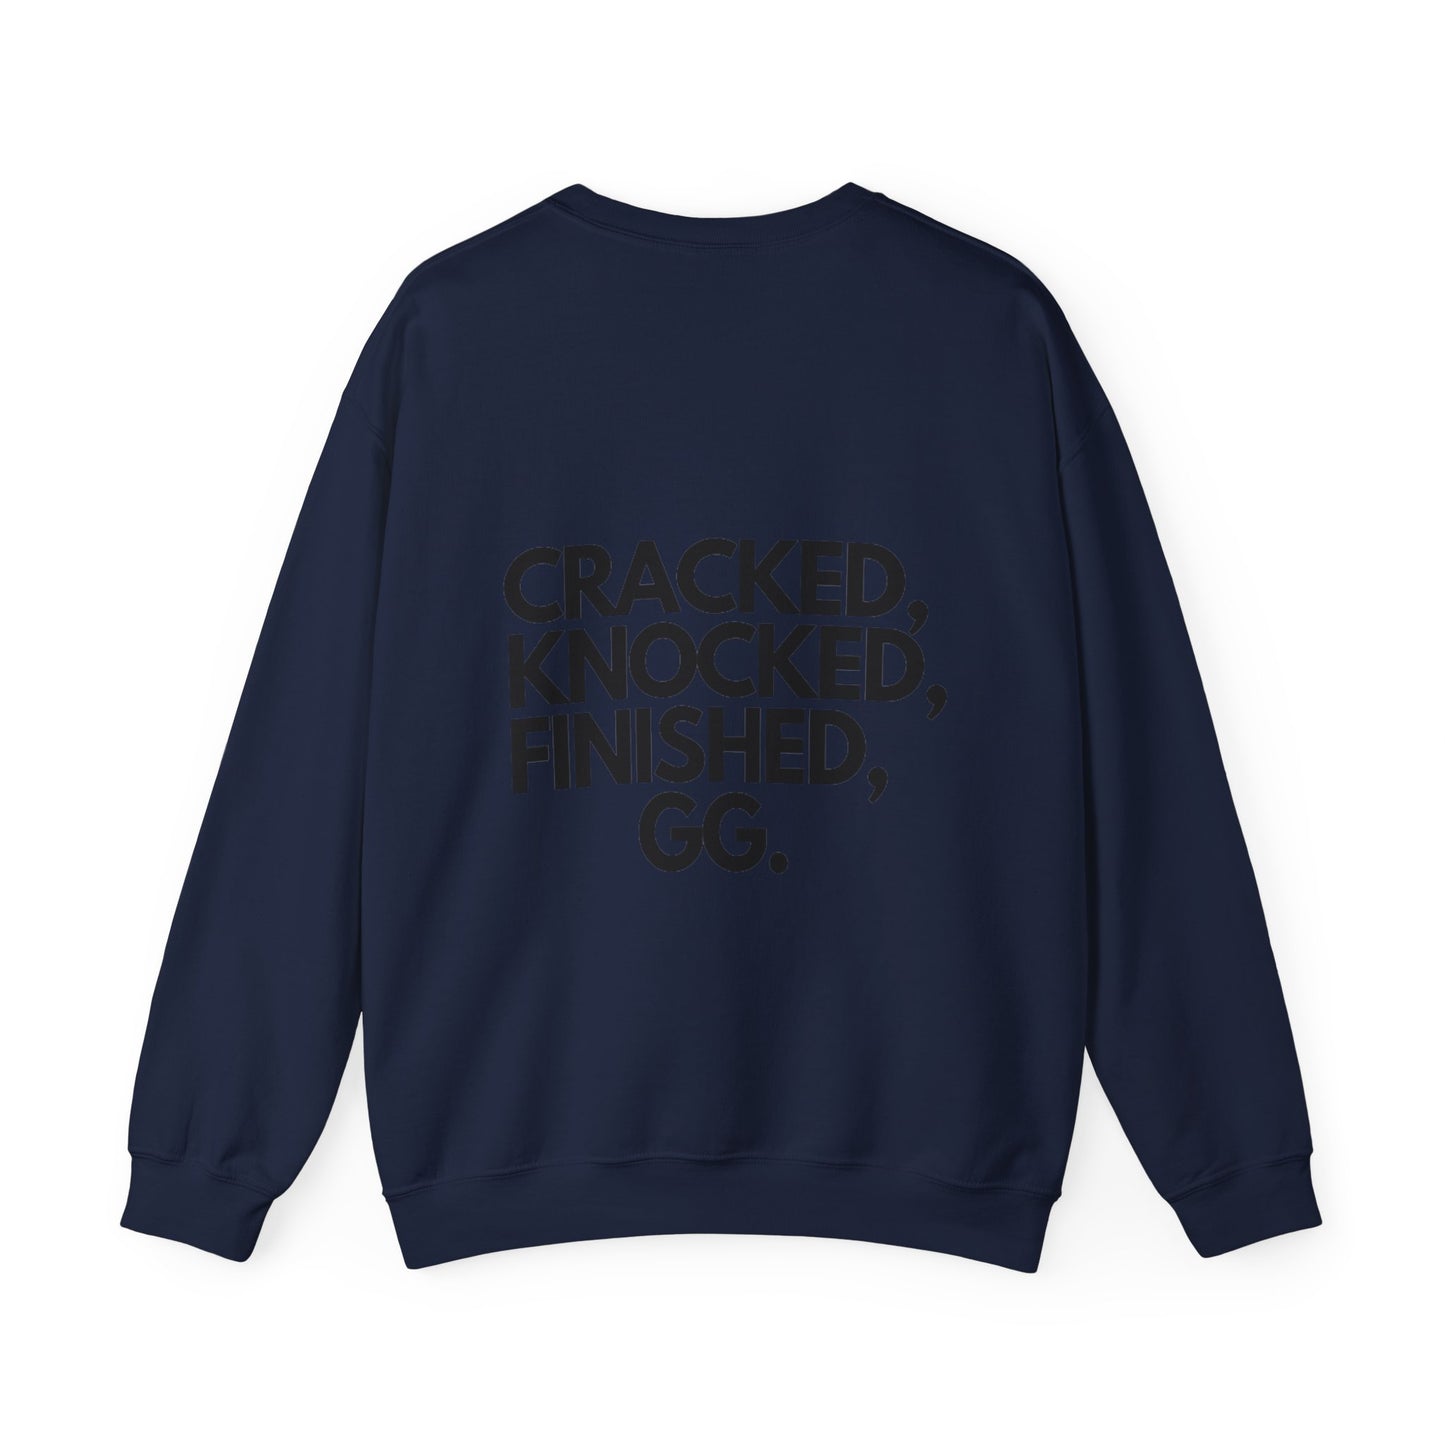 Cracked, Knocked, Finished, GG. Sweatshirt